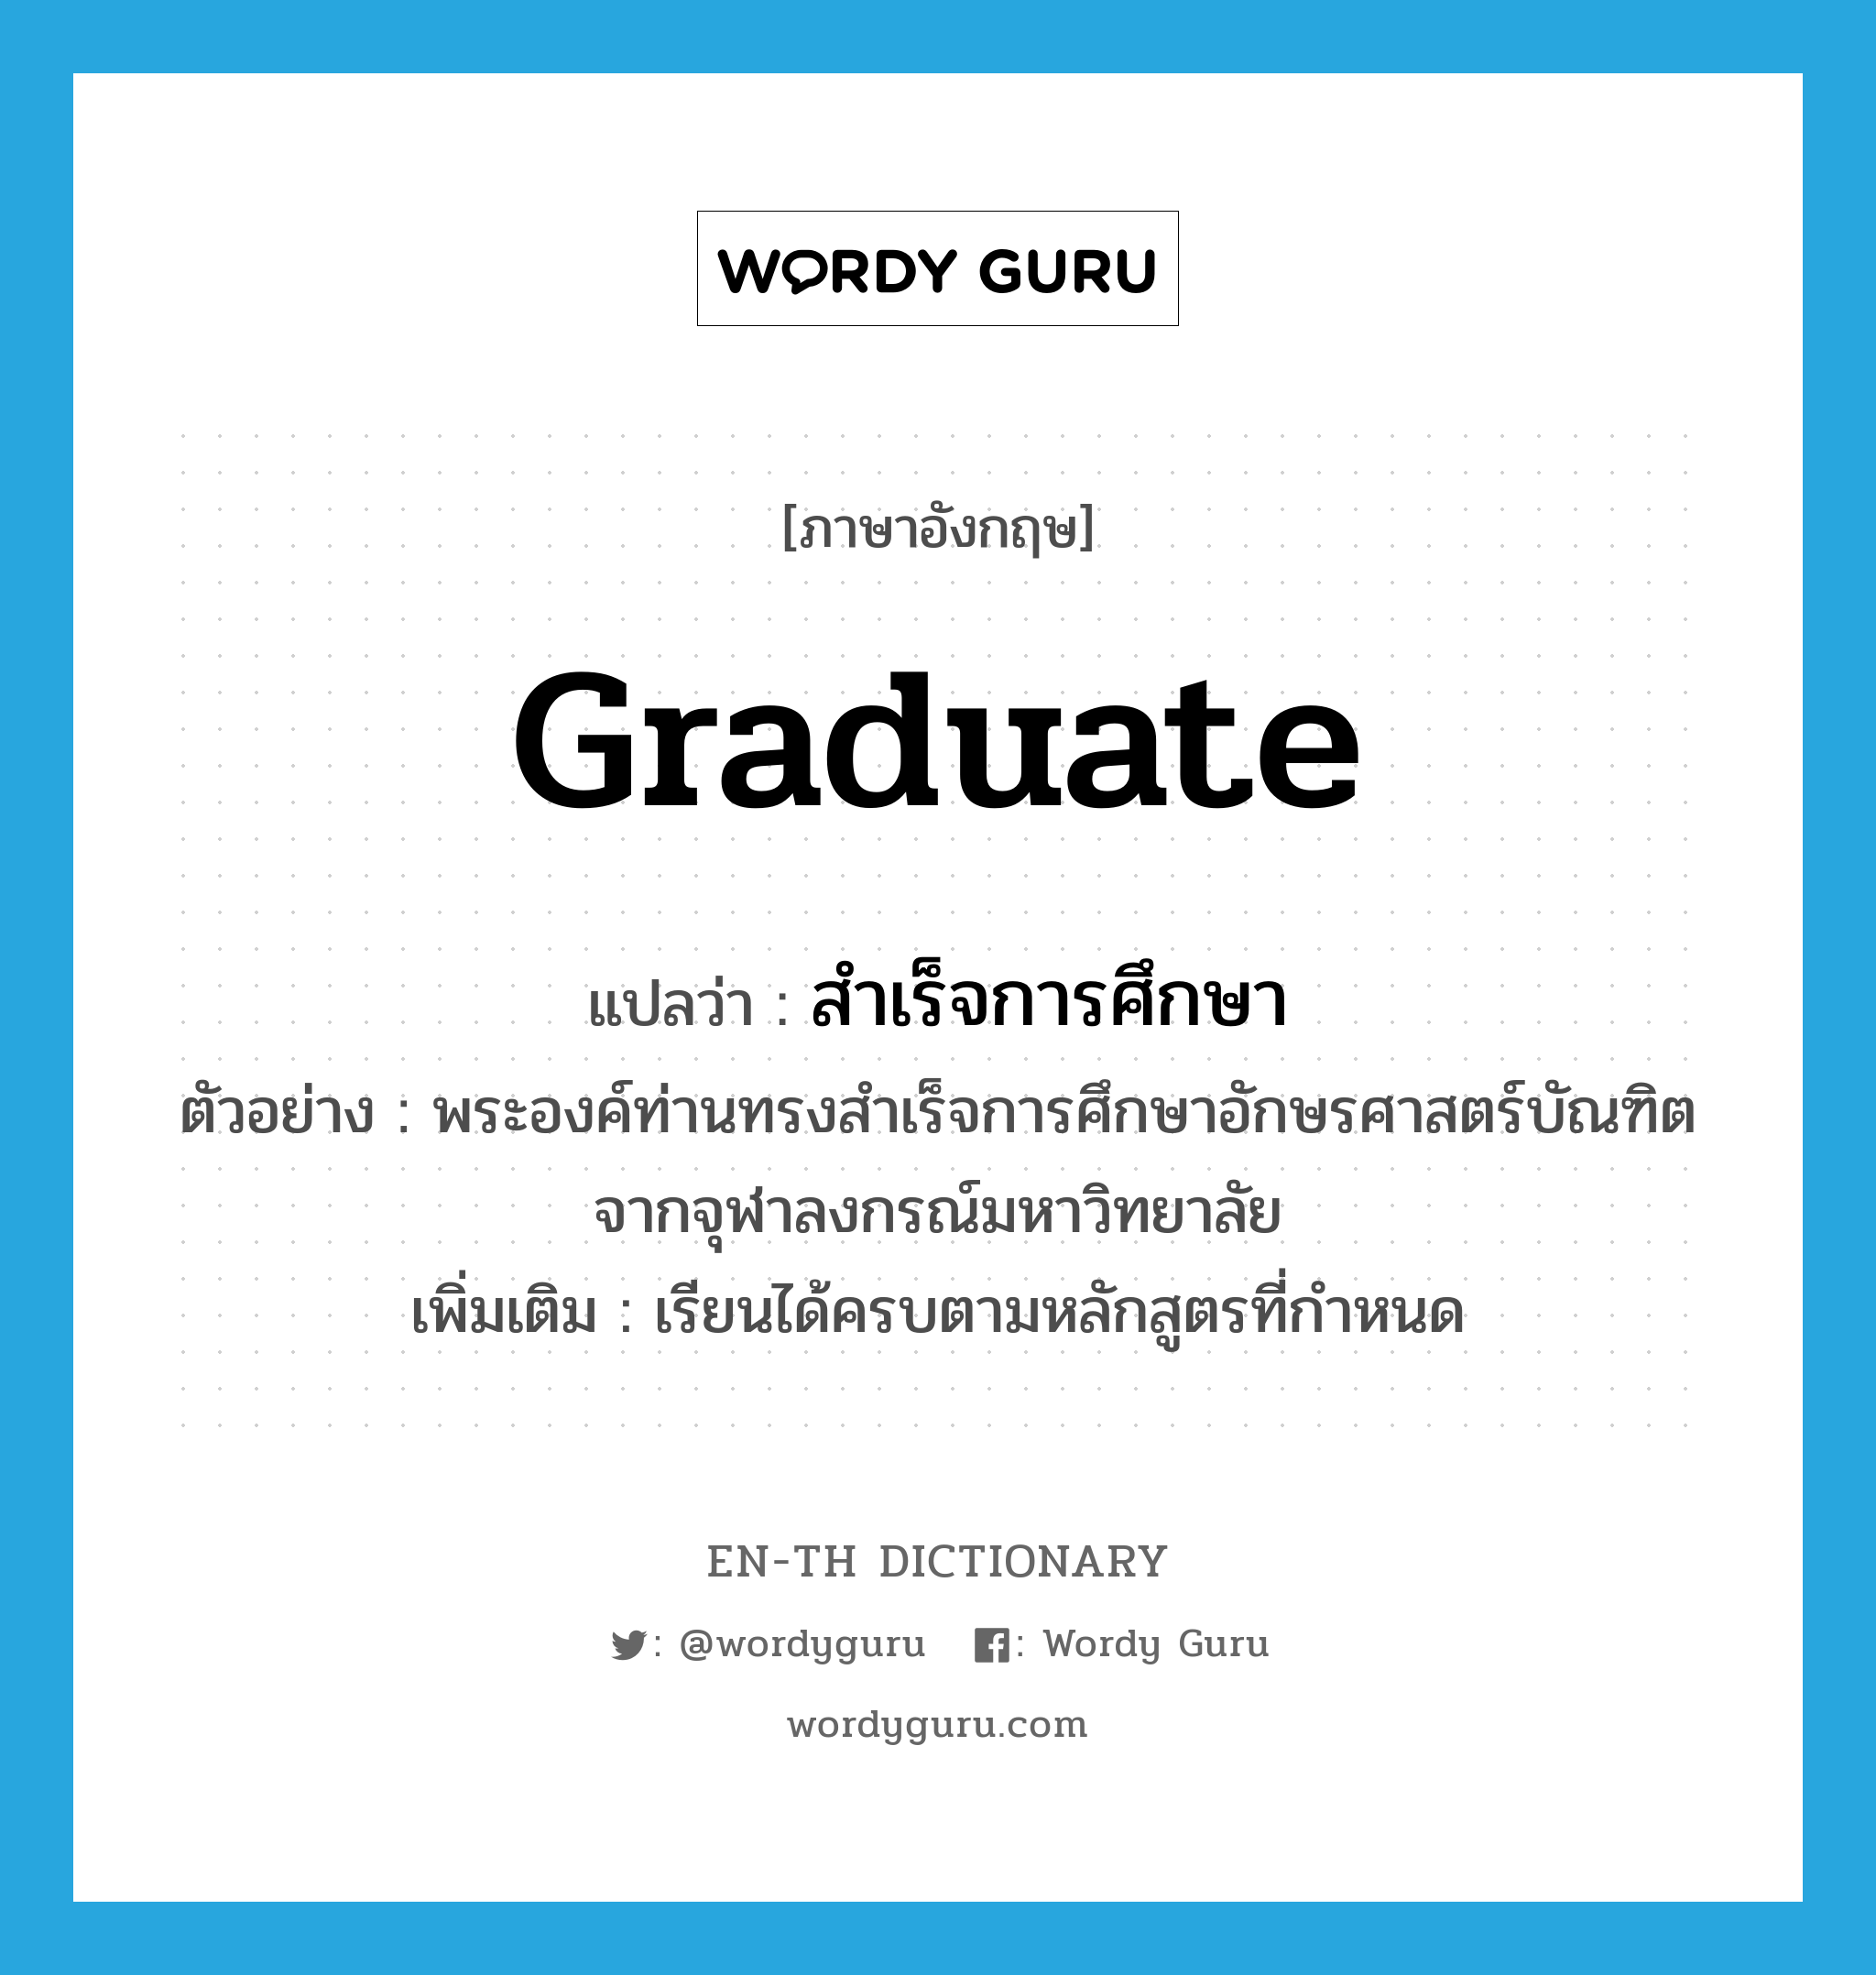 graduate แปลว่า?, คำศัพท์ภาษาอังกฤษ graduate แปลว่า สำเร็จการศึกษา ประเภท V ตัวอย่าง พระองค์ท่านทรงสำเร็จการศึกษาอักษรศาสตร์บัณฑิต จากจุฬาลงกรณ์มหาวิทยาลัย เพิ่มเติม เรียนได้ครบตามหลักสูตรที่กำหนด หมวด V